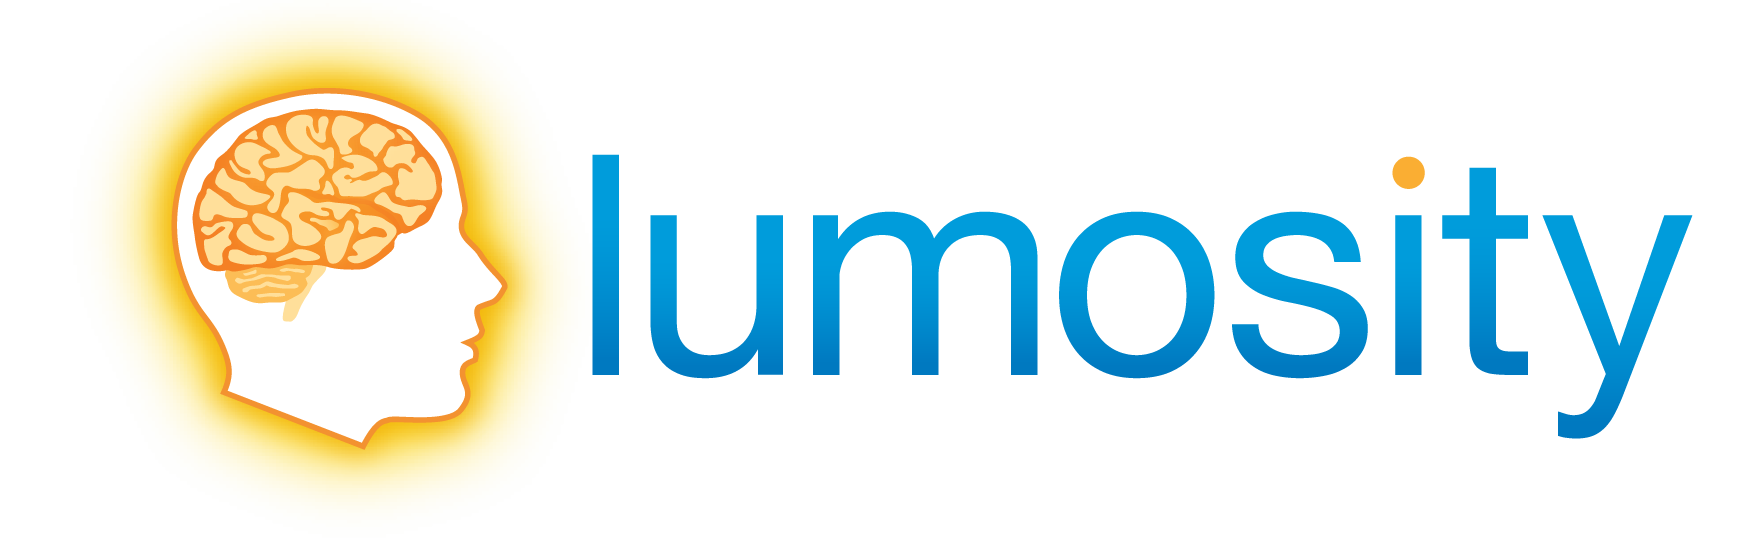 lumosity_logo